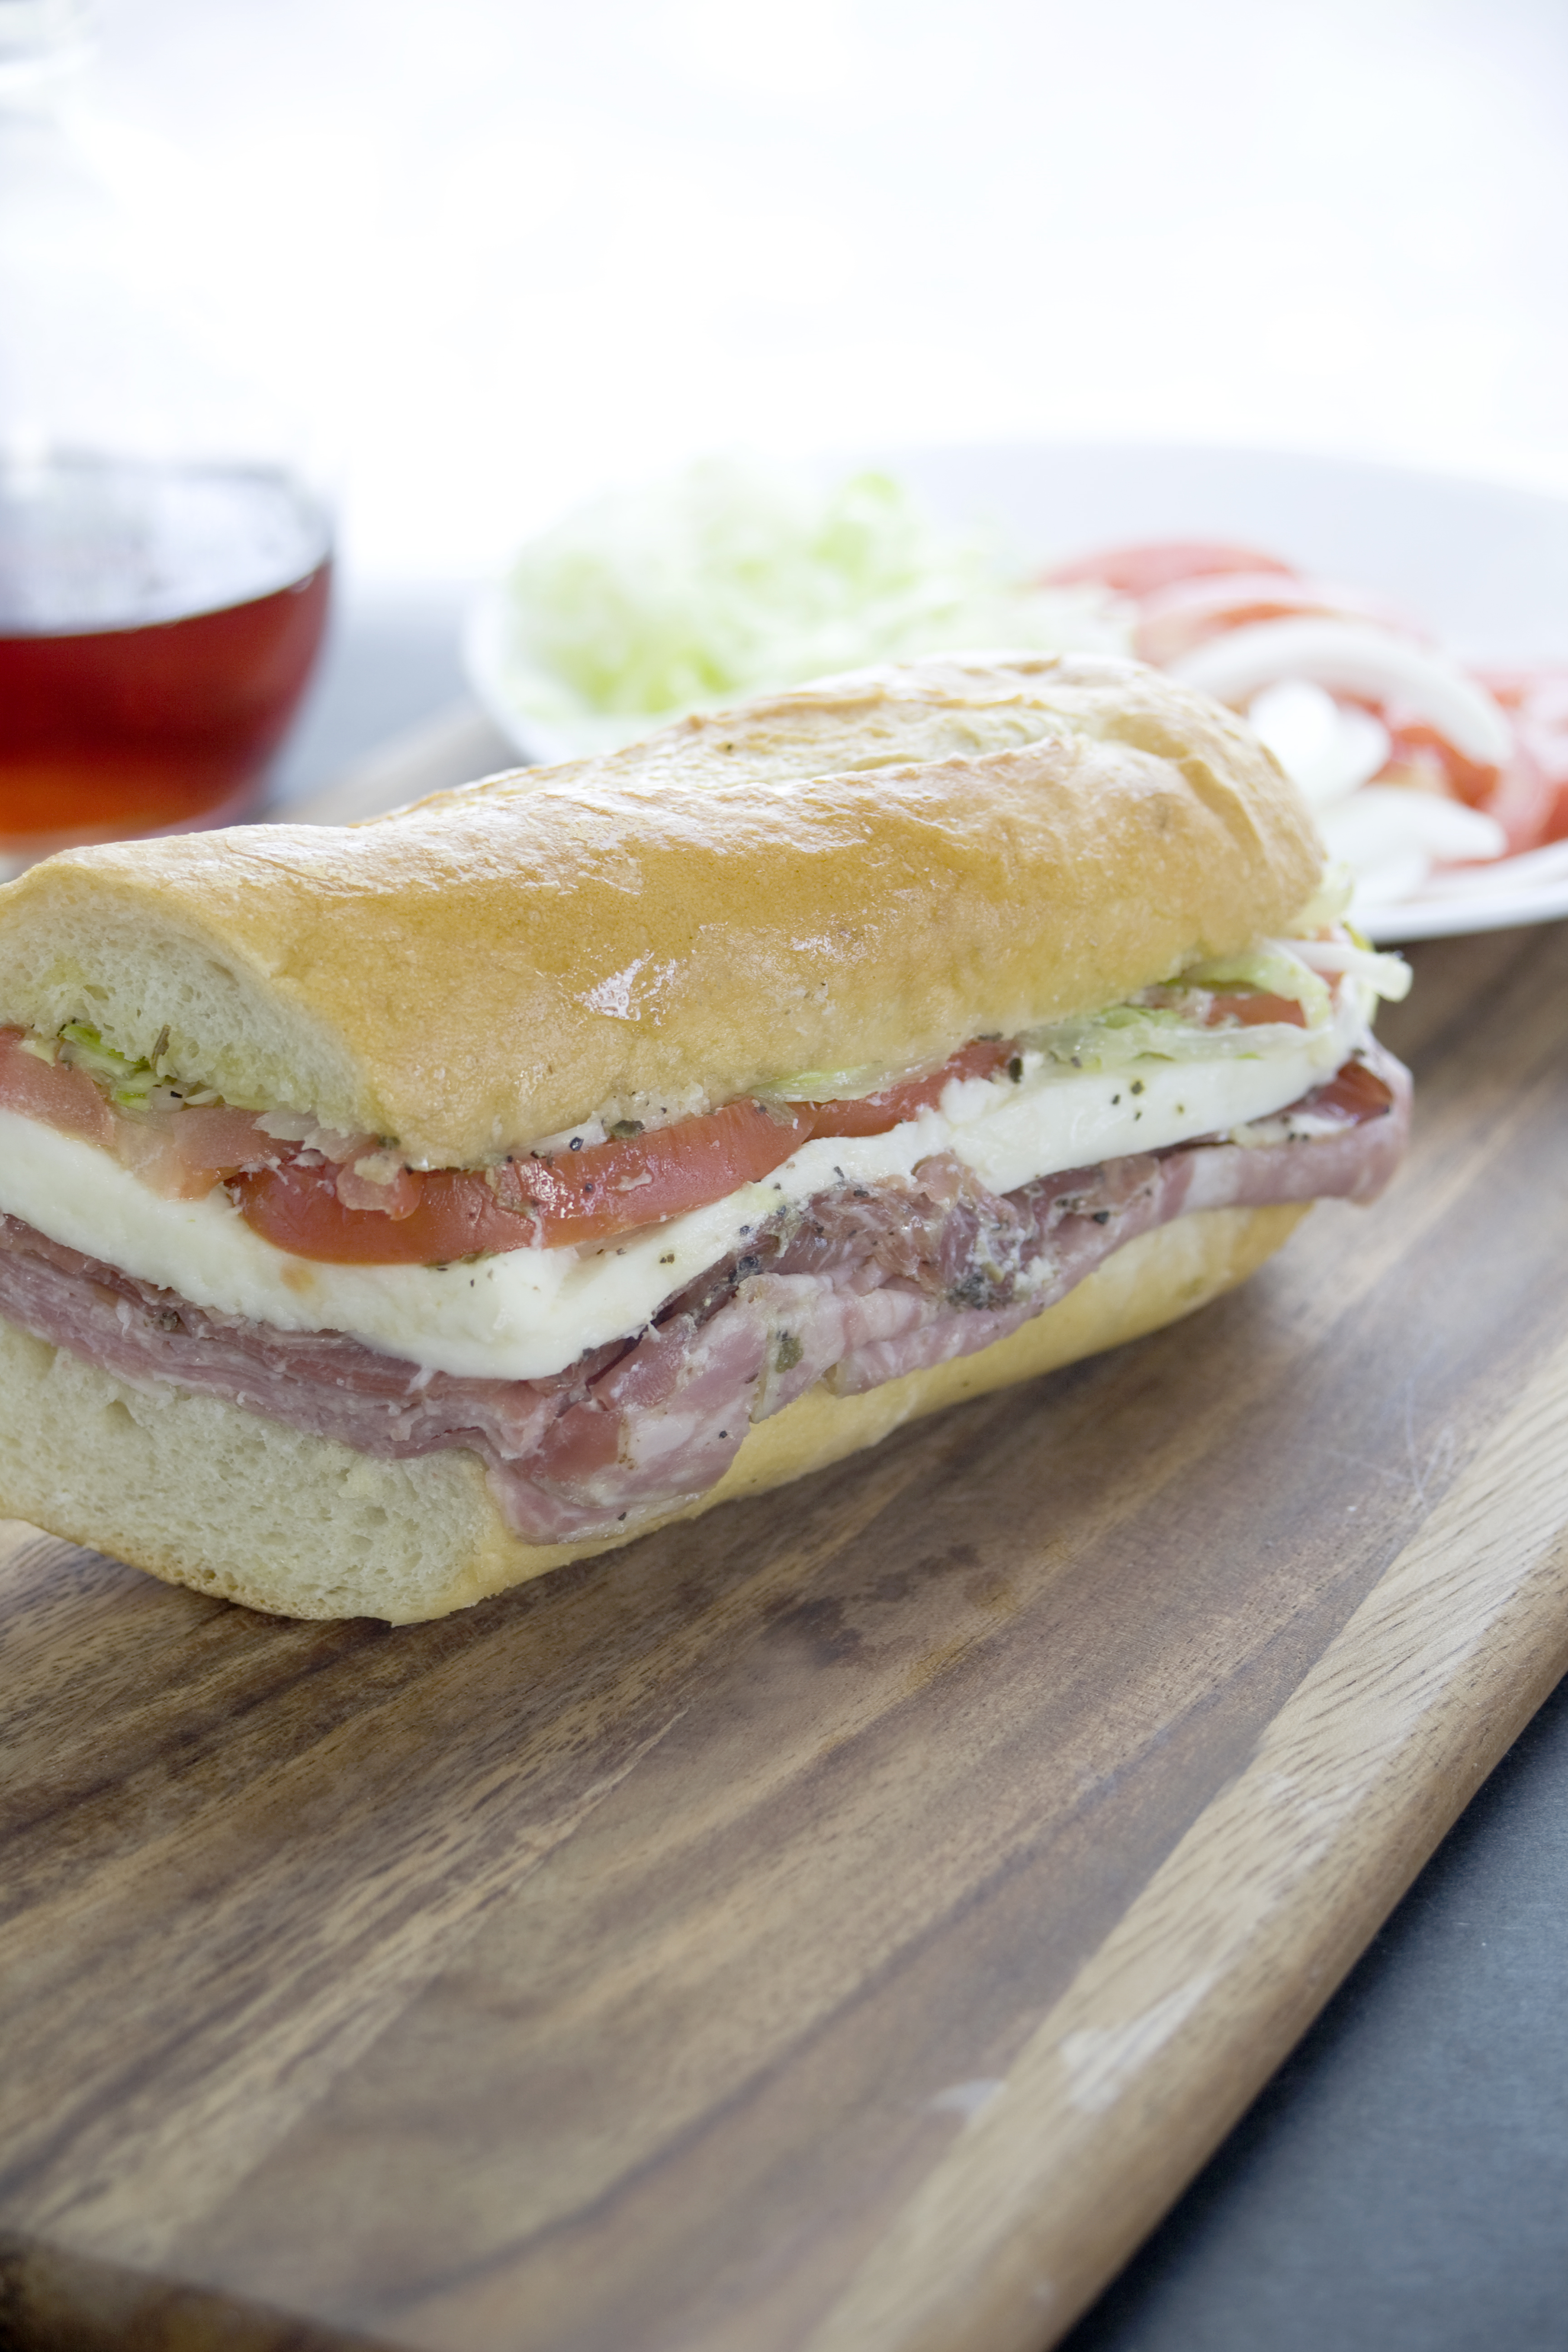 Italian style hoagie sandwich